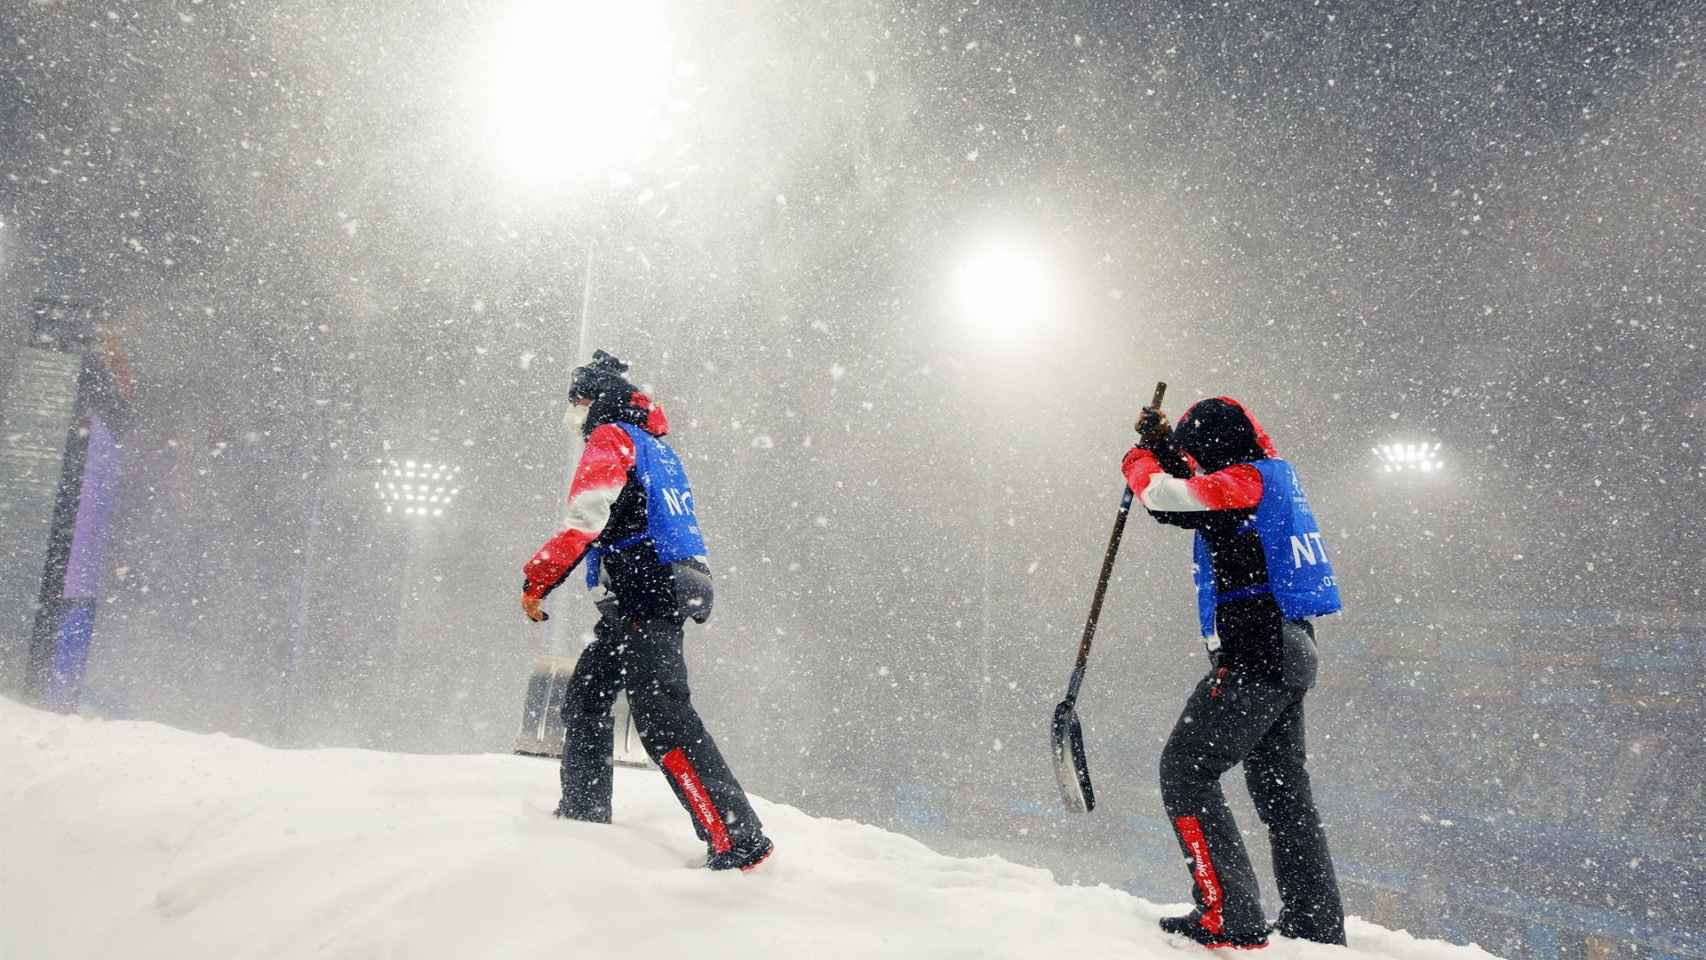 Trabajadores de los Juegos Olímpicos de Invierno de Pekín 2022 quitando nieve